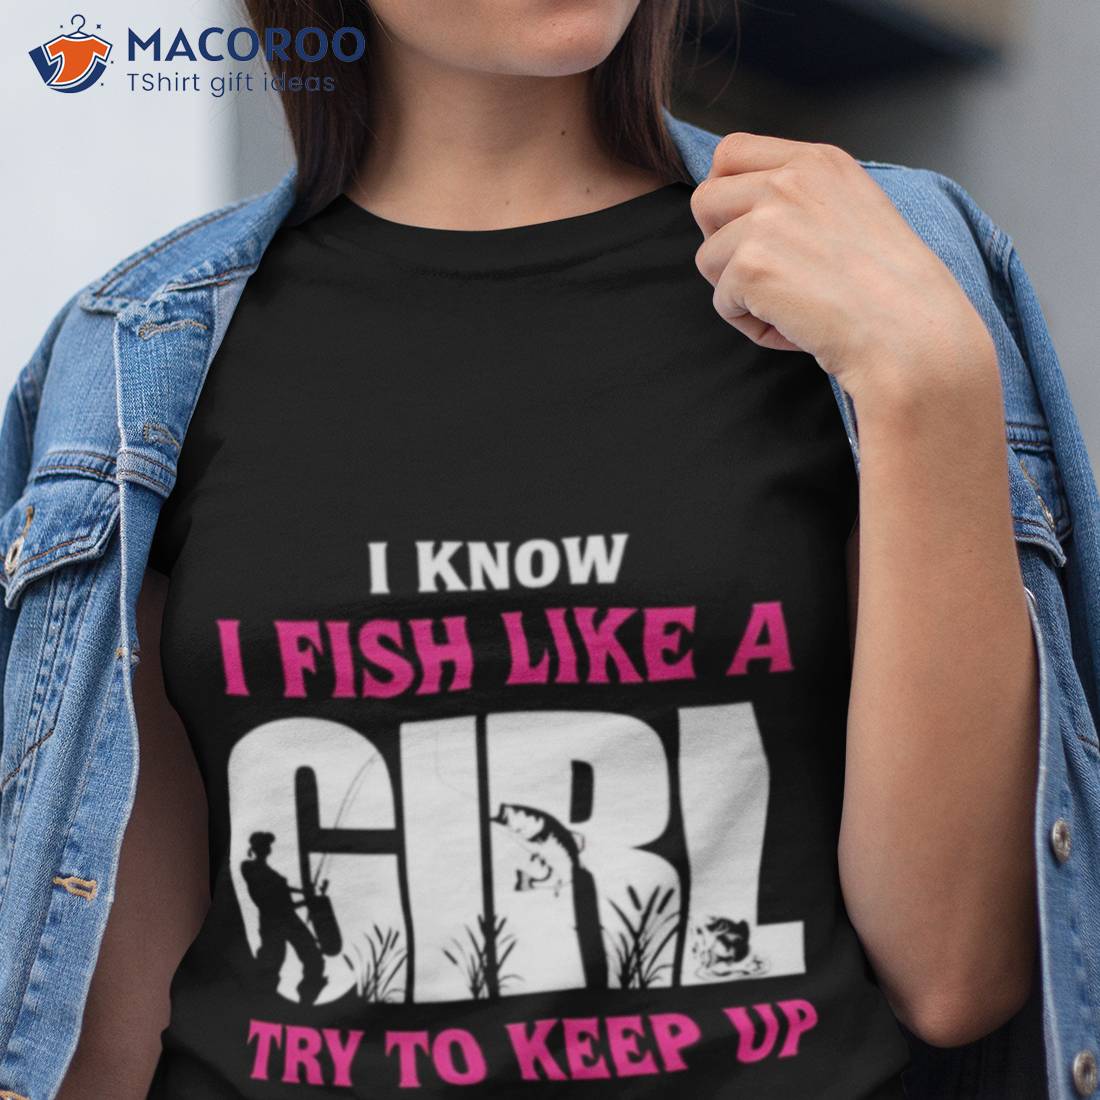 I Know I Fish Like A Girl Try to Keep